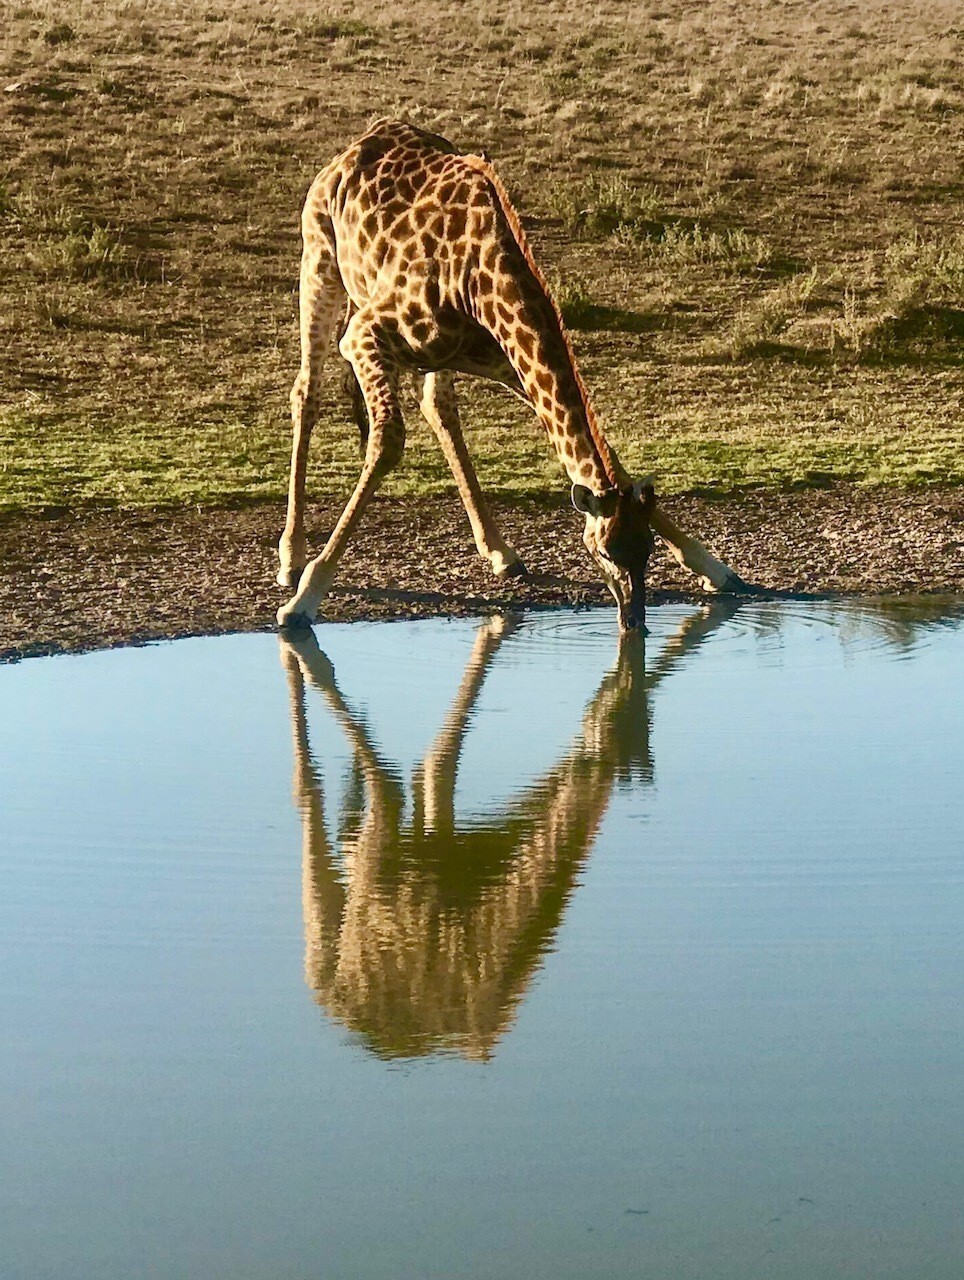 Uma girafa prenha resolveu beber água bem na nossa frente!